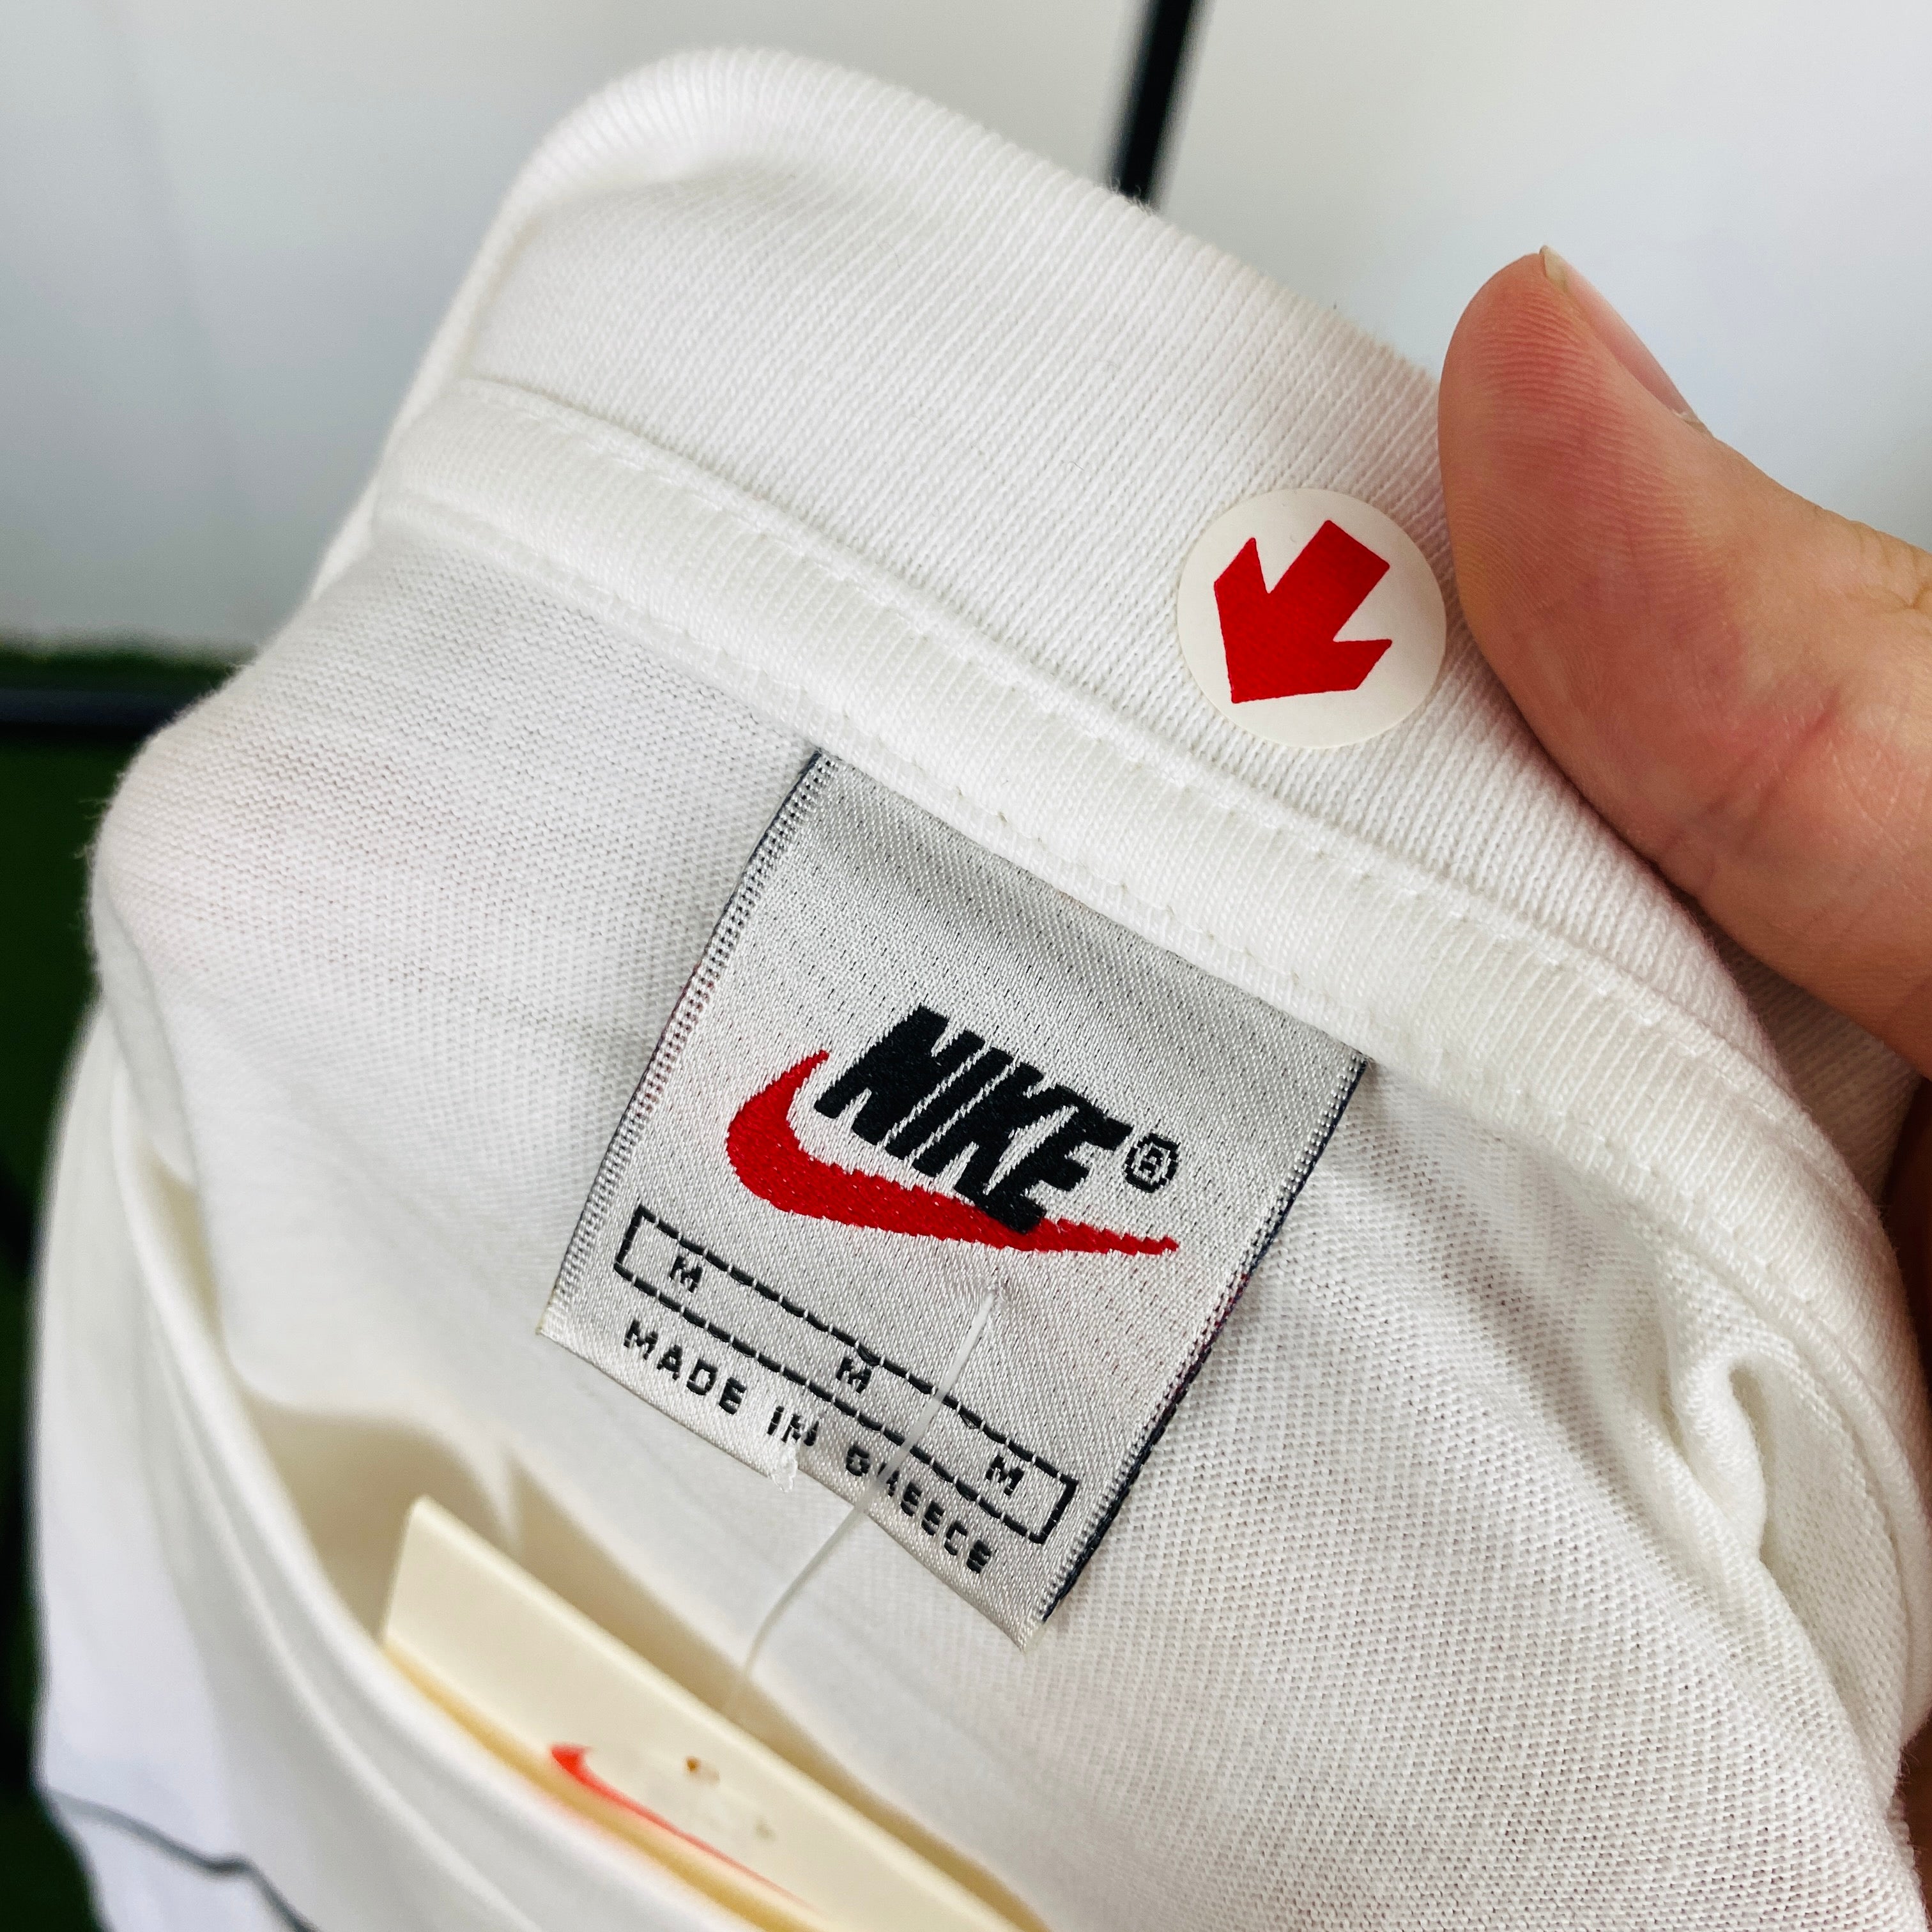 90s Nike Swoosh T-Shirt White Medium